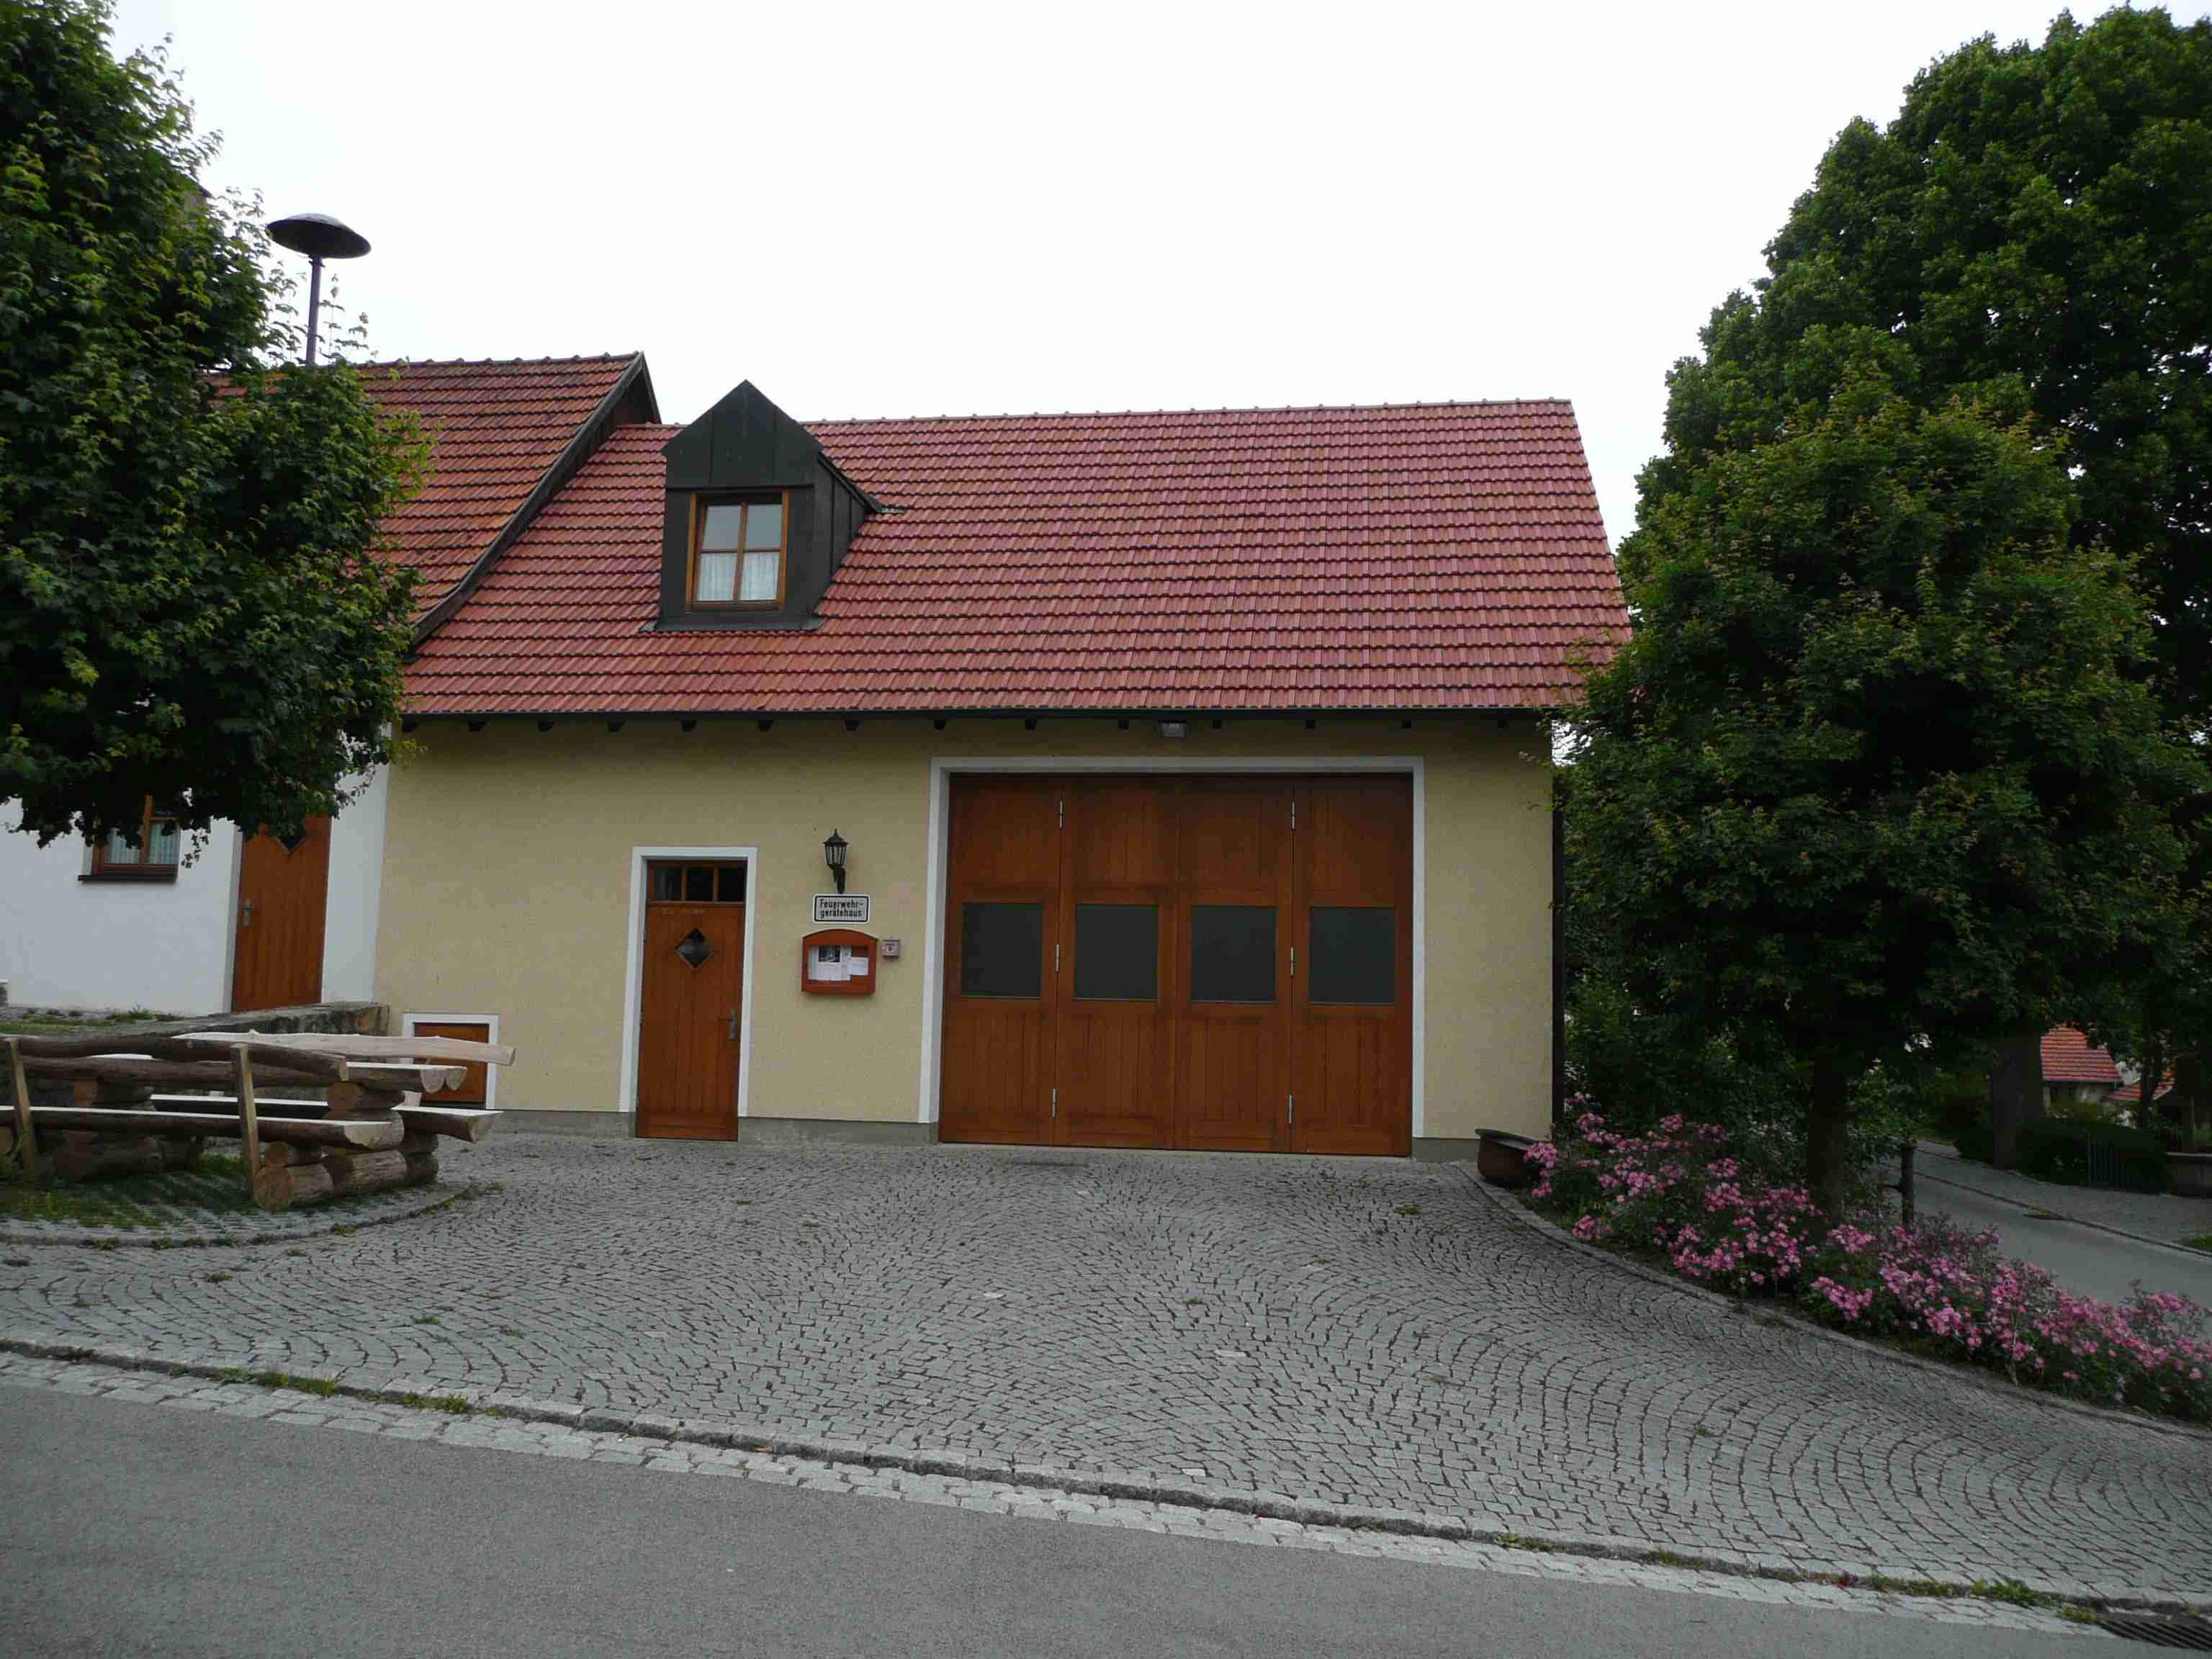 Feuerwehrhaus11